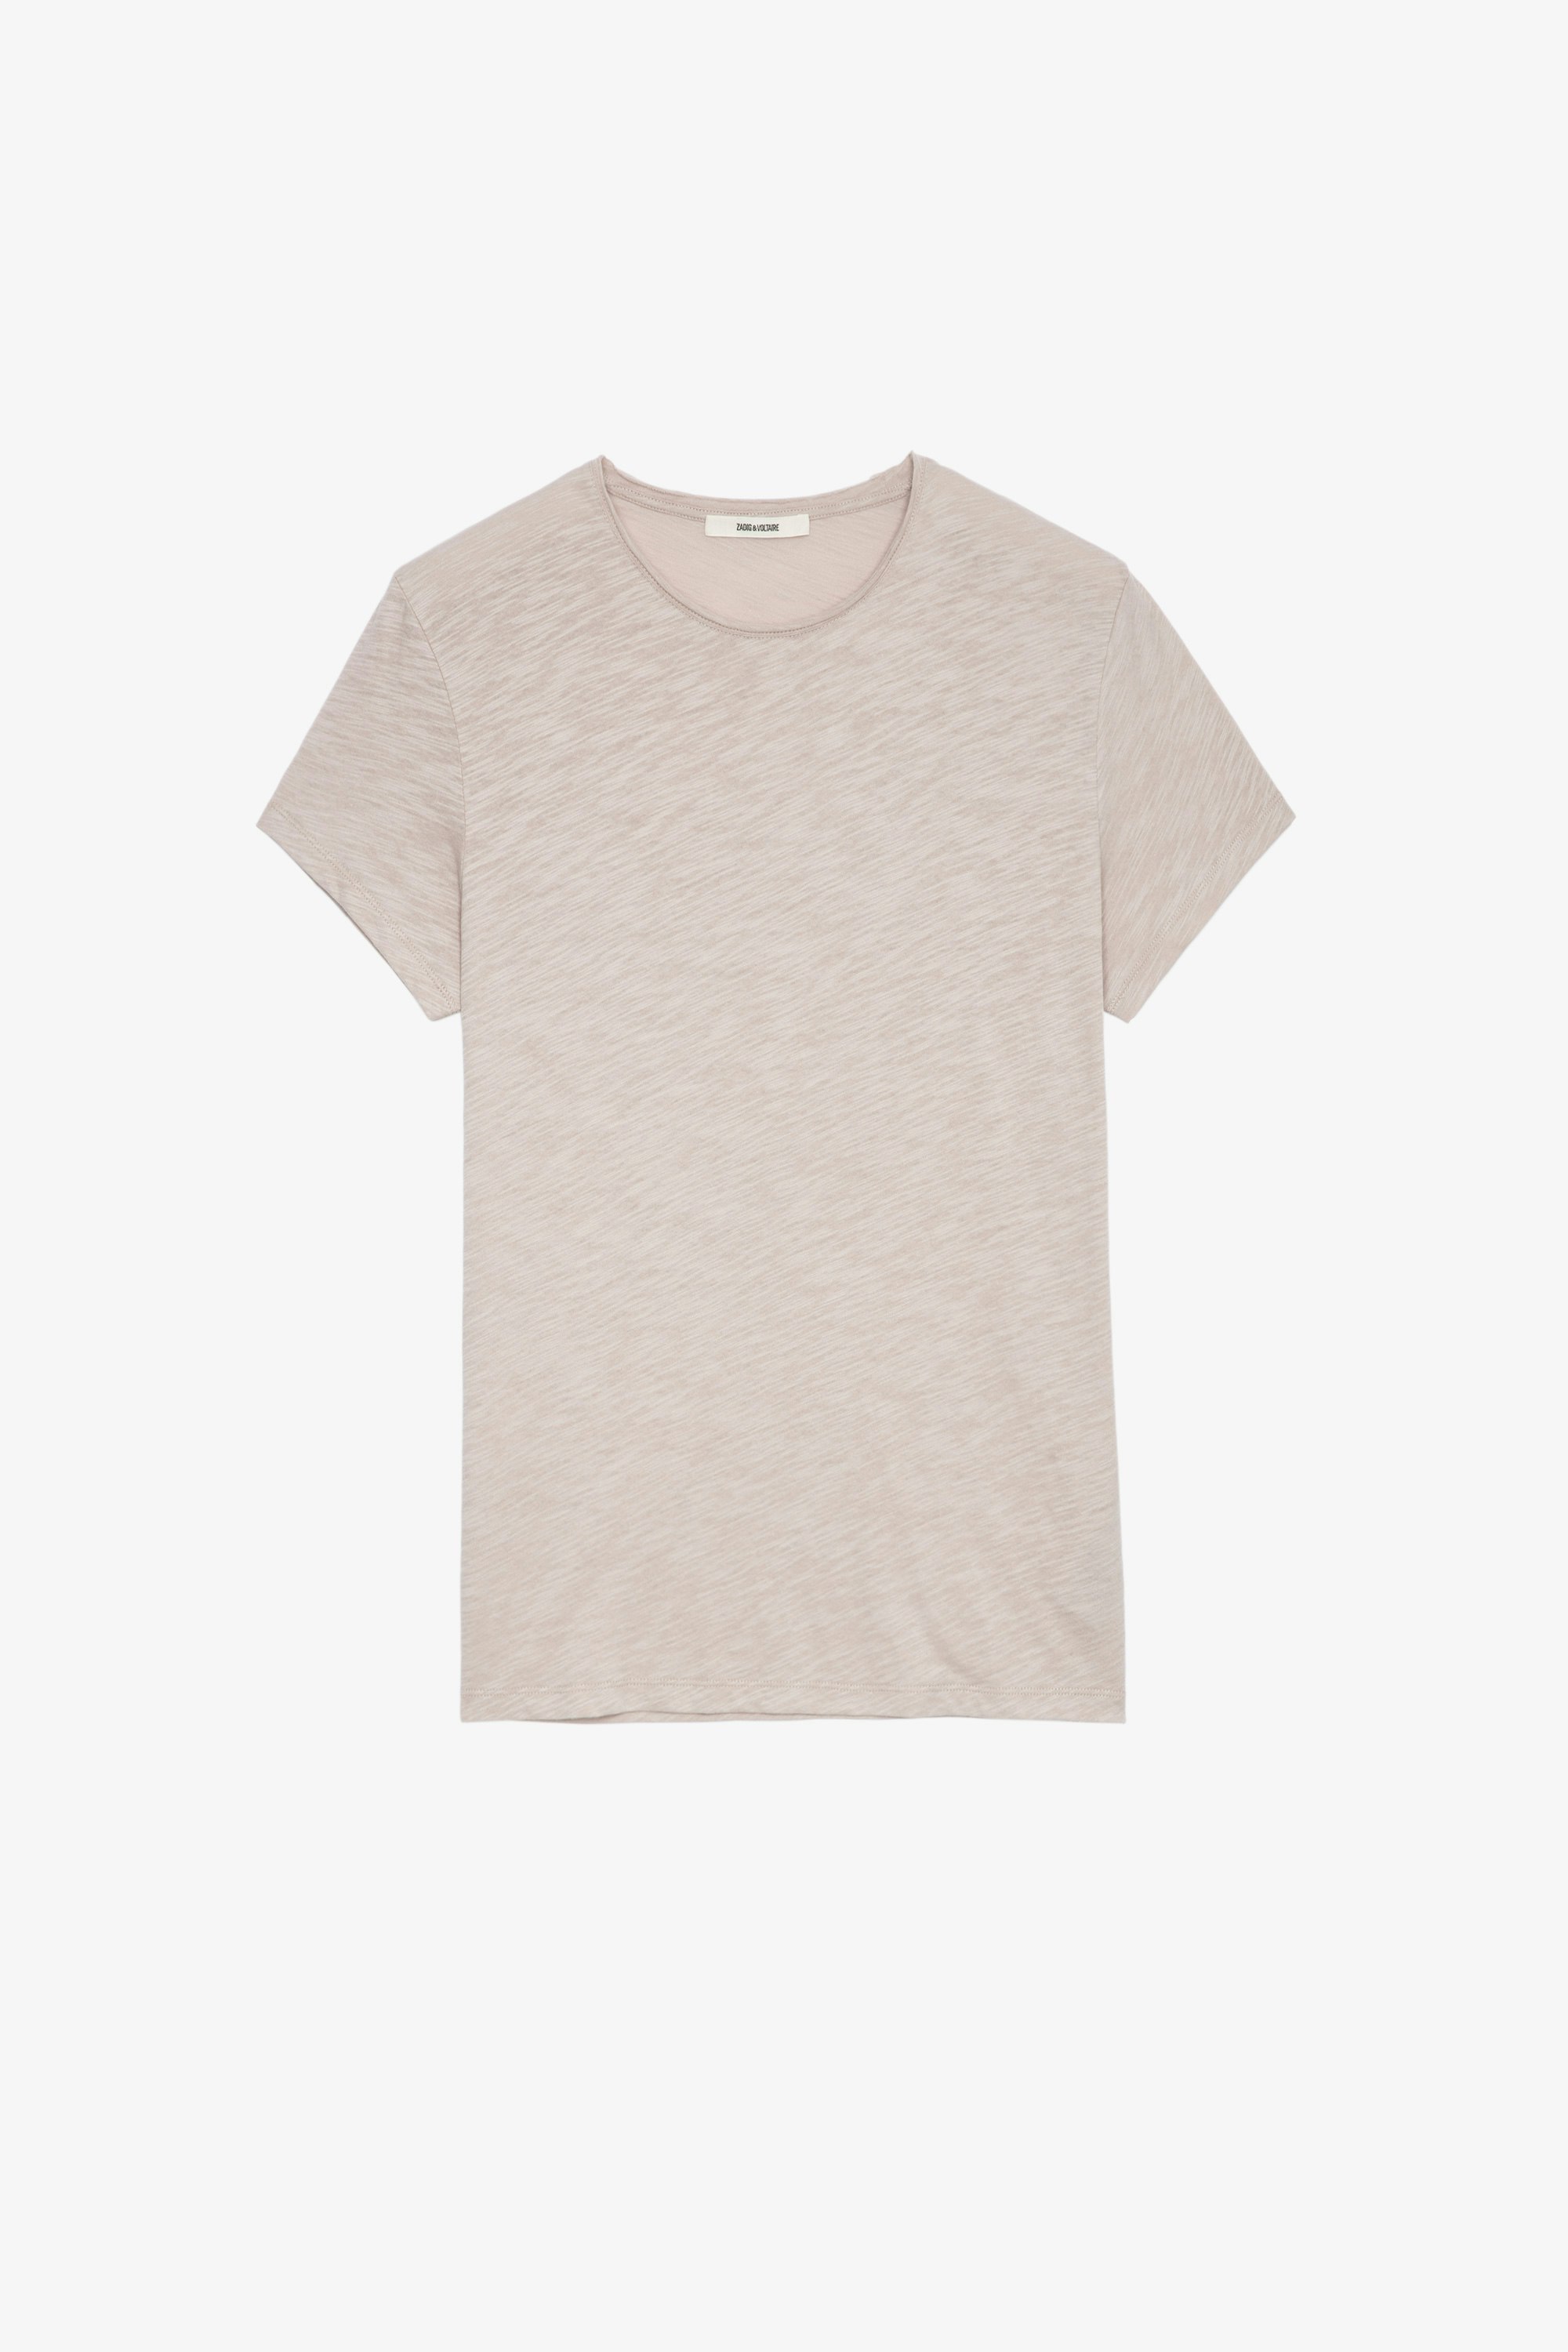 Toby Slub T-Shirt フレームベージュ コットンTシャツ メンズ